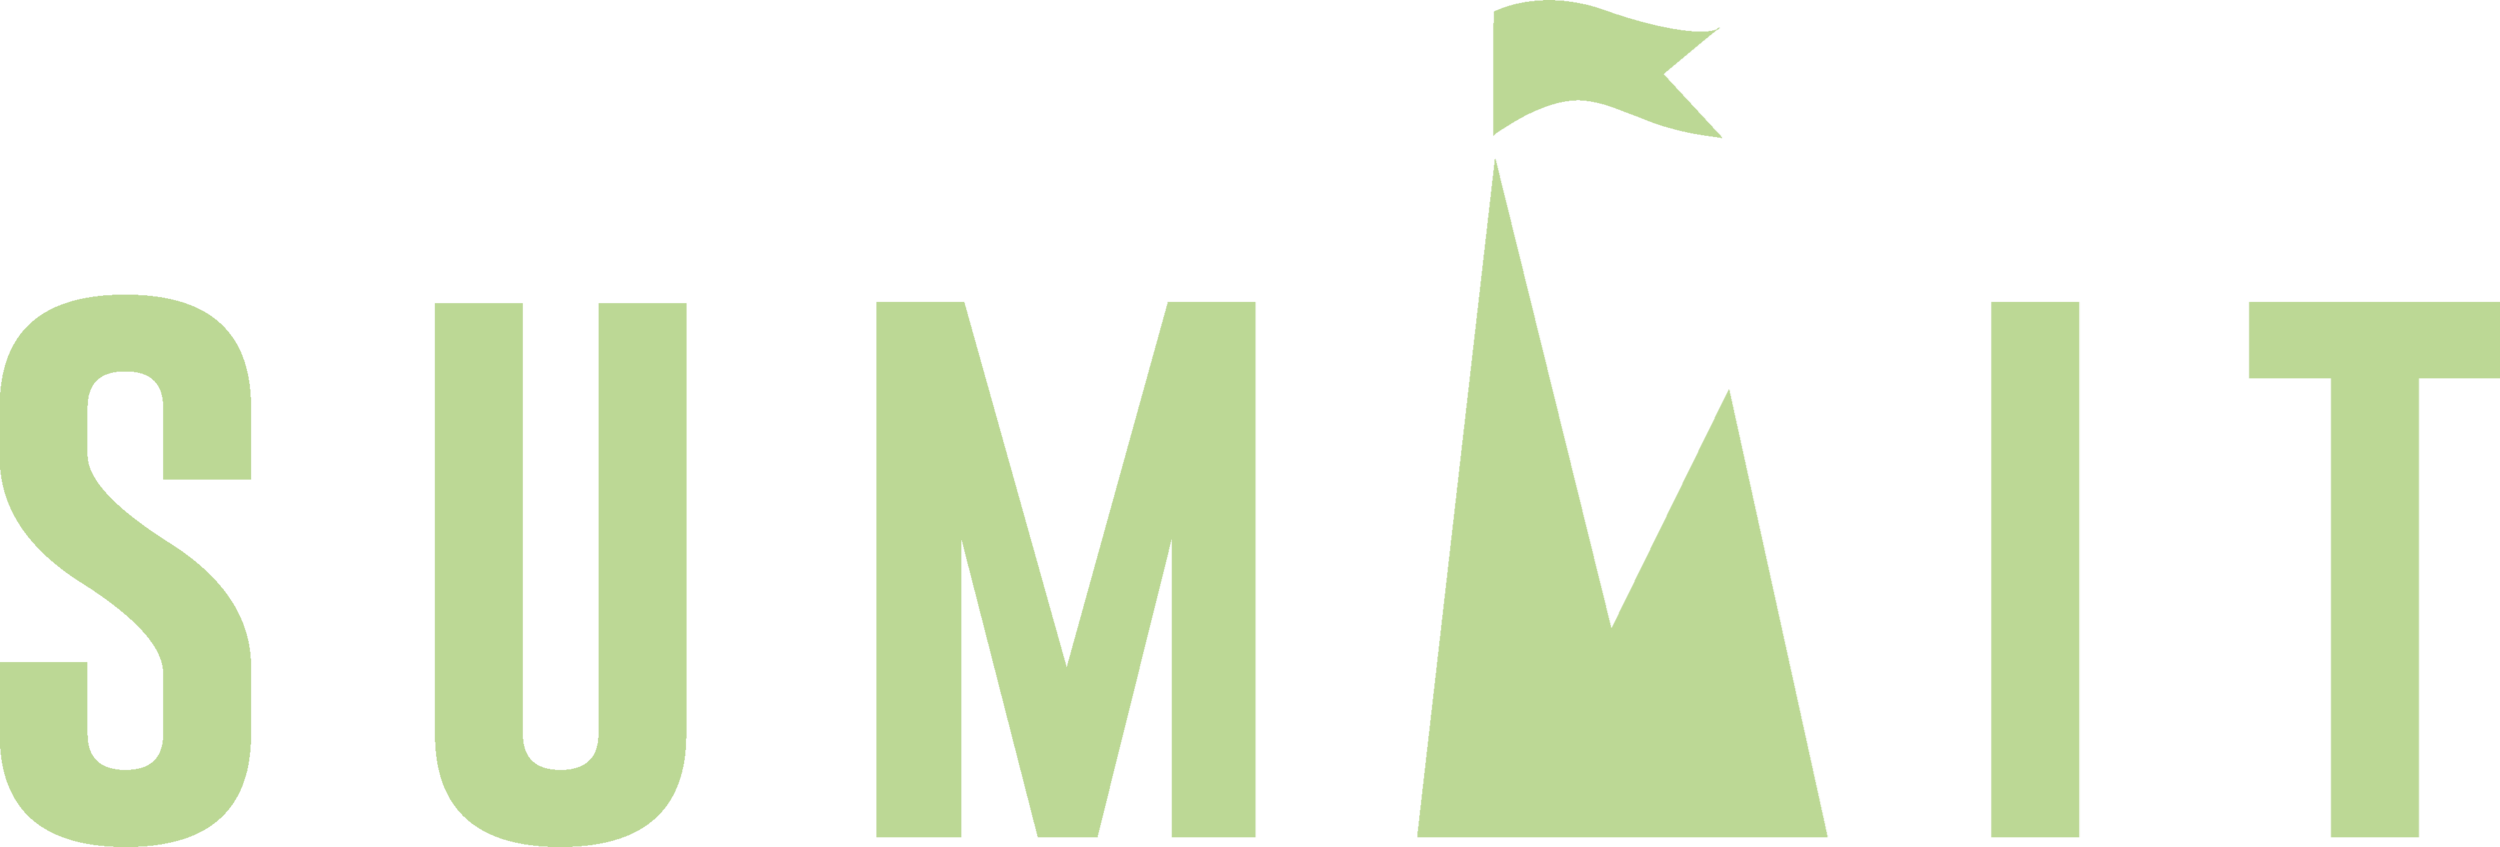 Summit (Canada) Cannabis Brand Logo